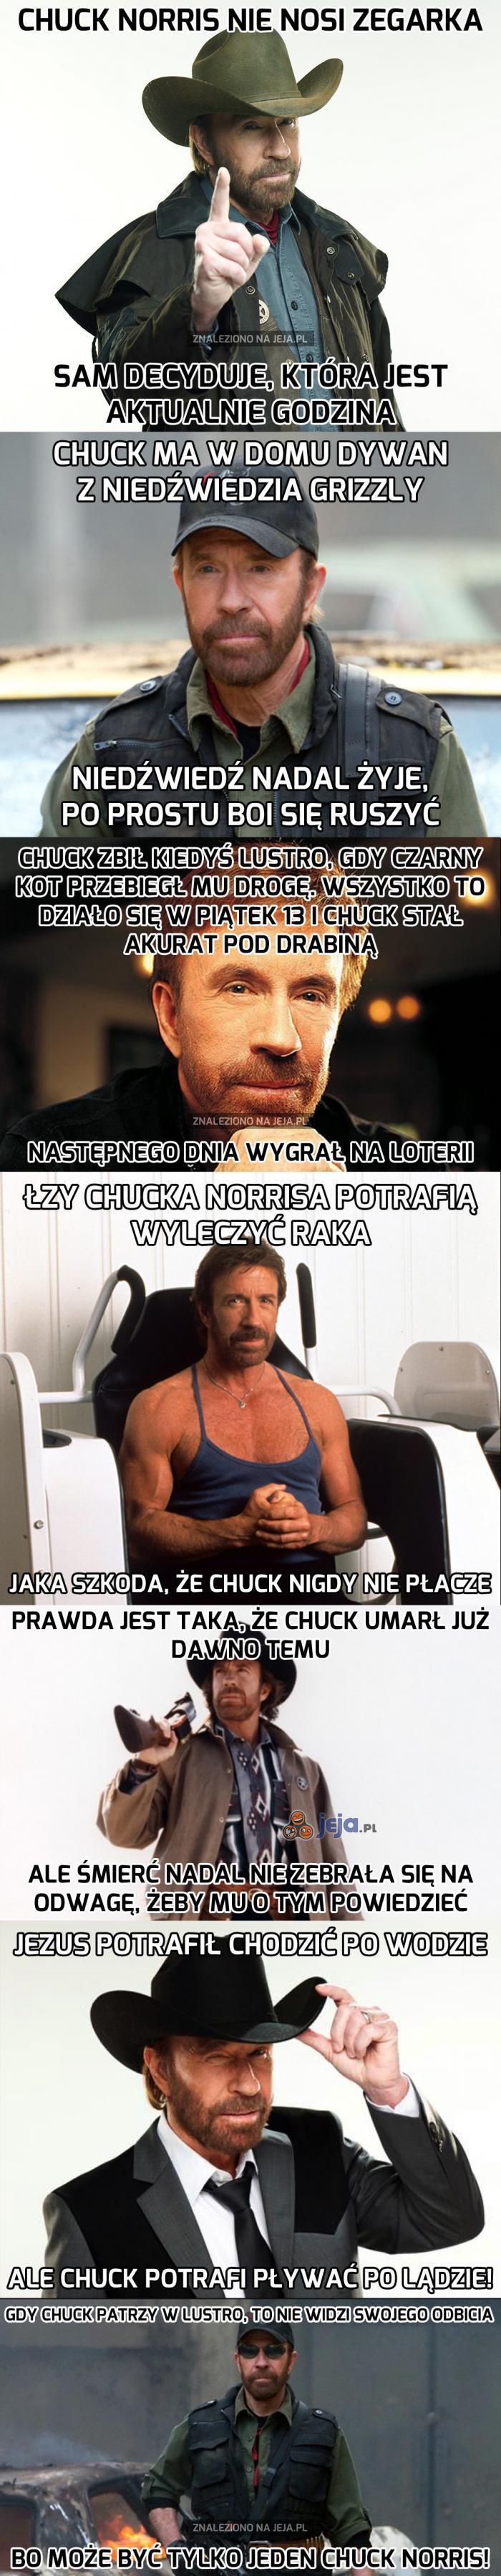 Chuck Norris niezwyciężony